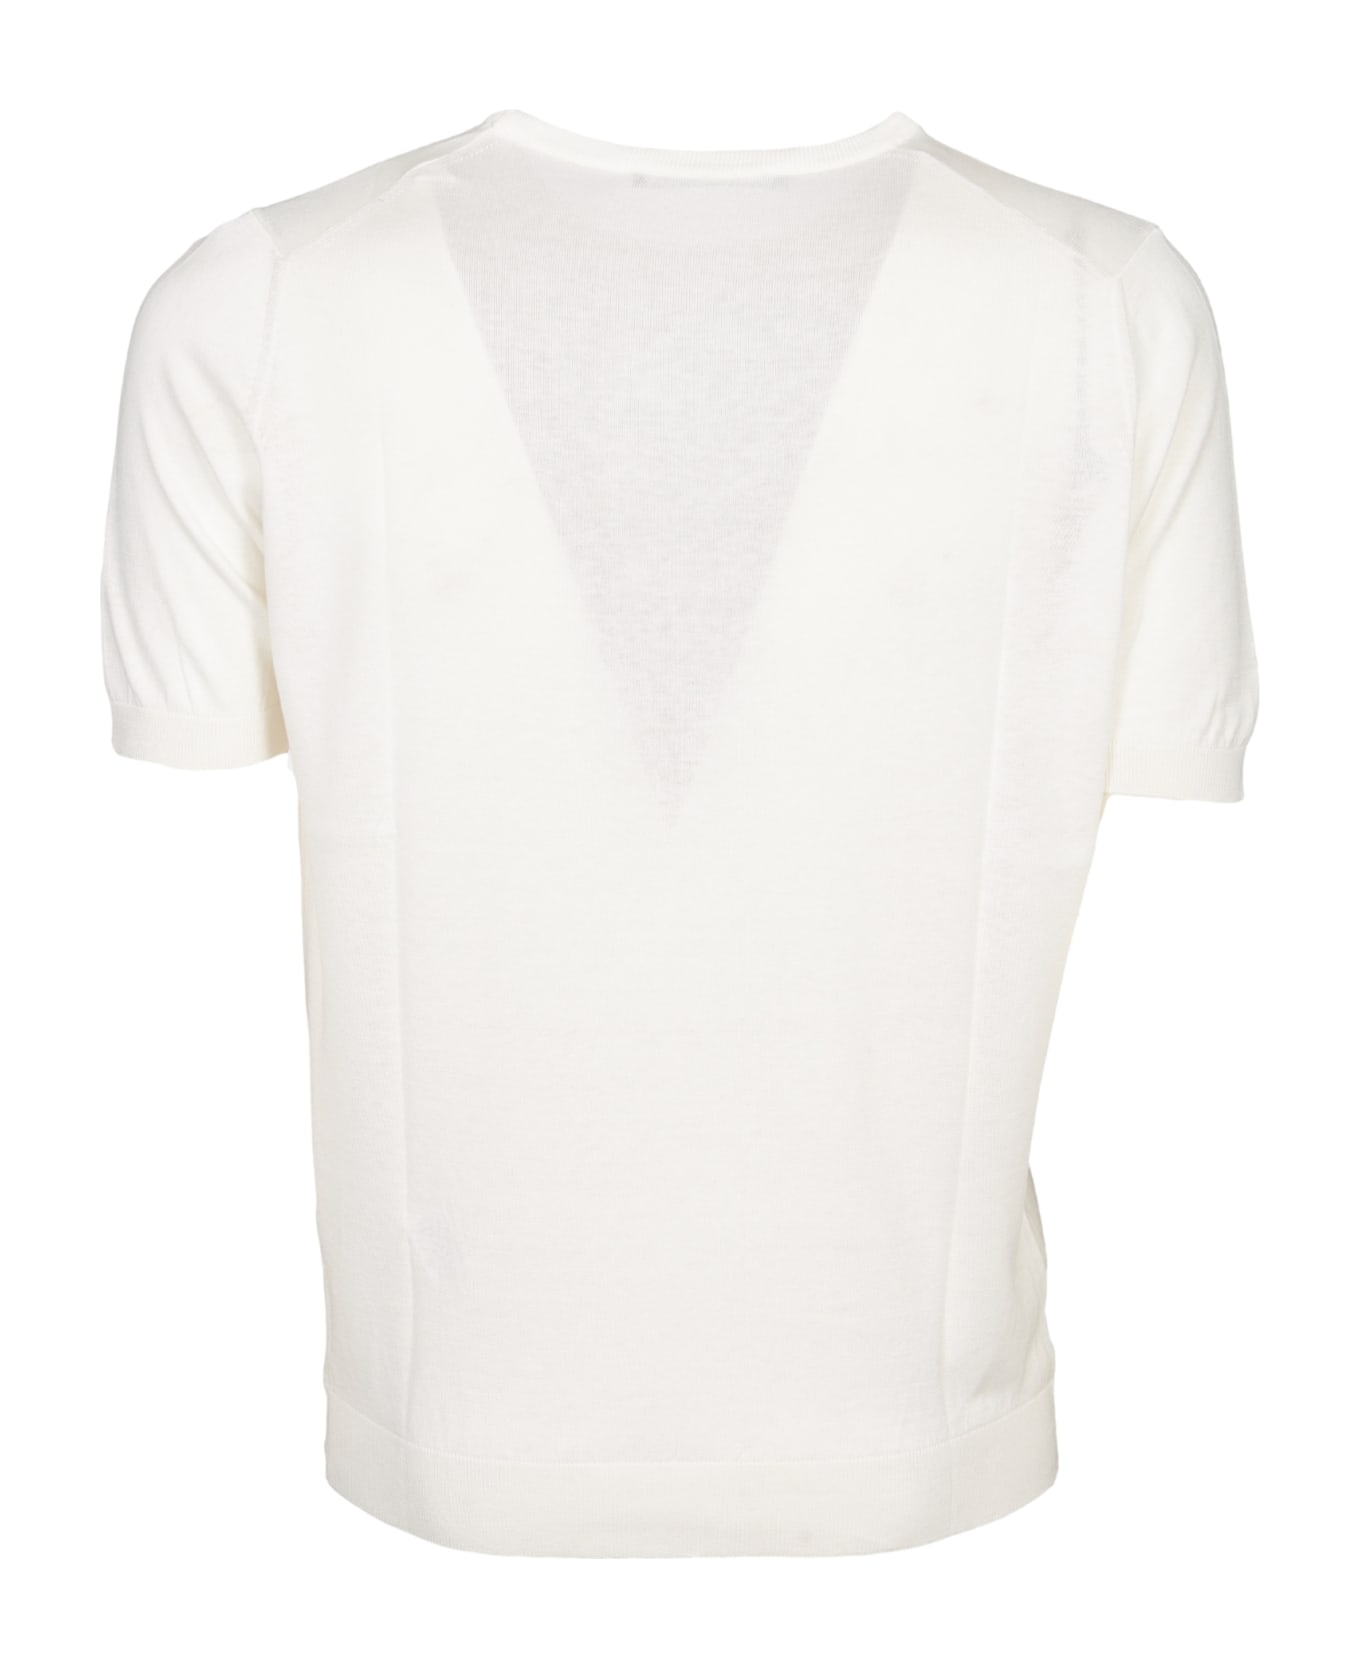 Tagliatore T-shirt - Cream シャツ